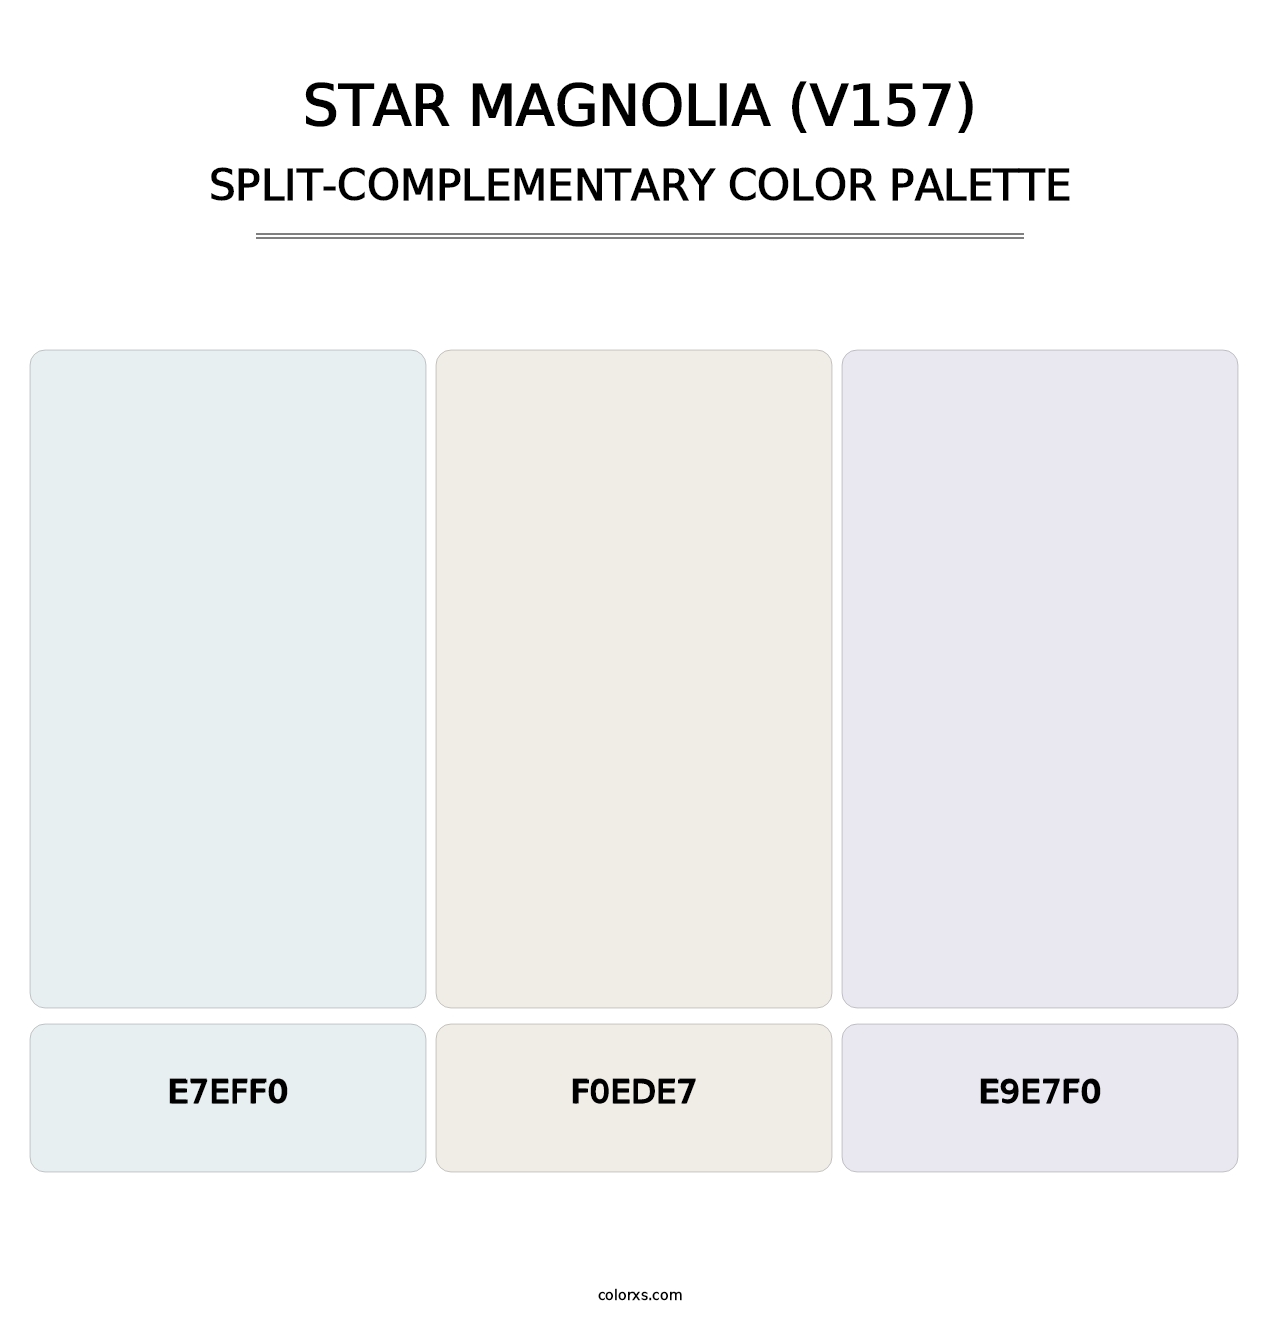 Star Magnolia (V157) - Split-Complementary Color Palette